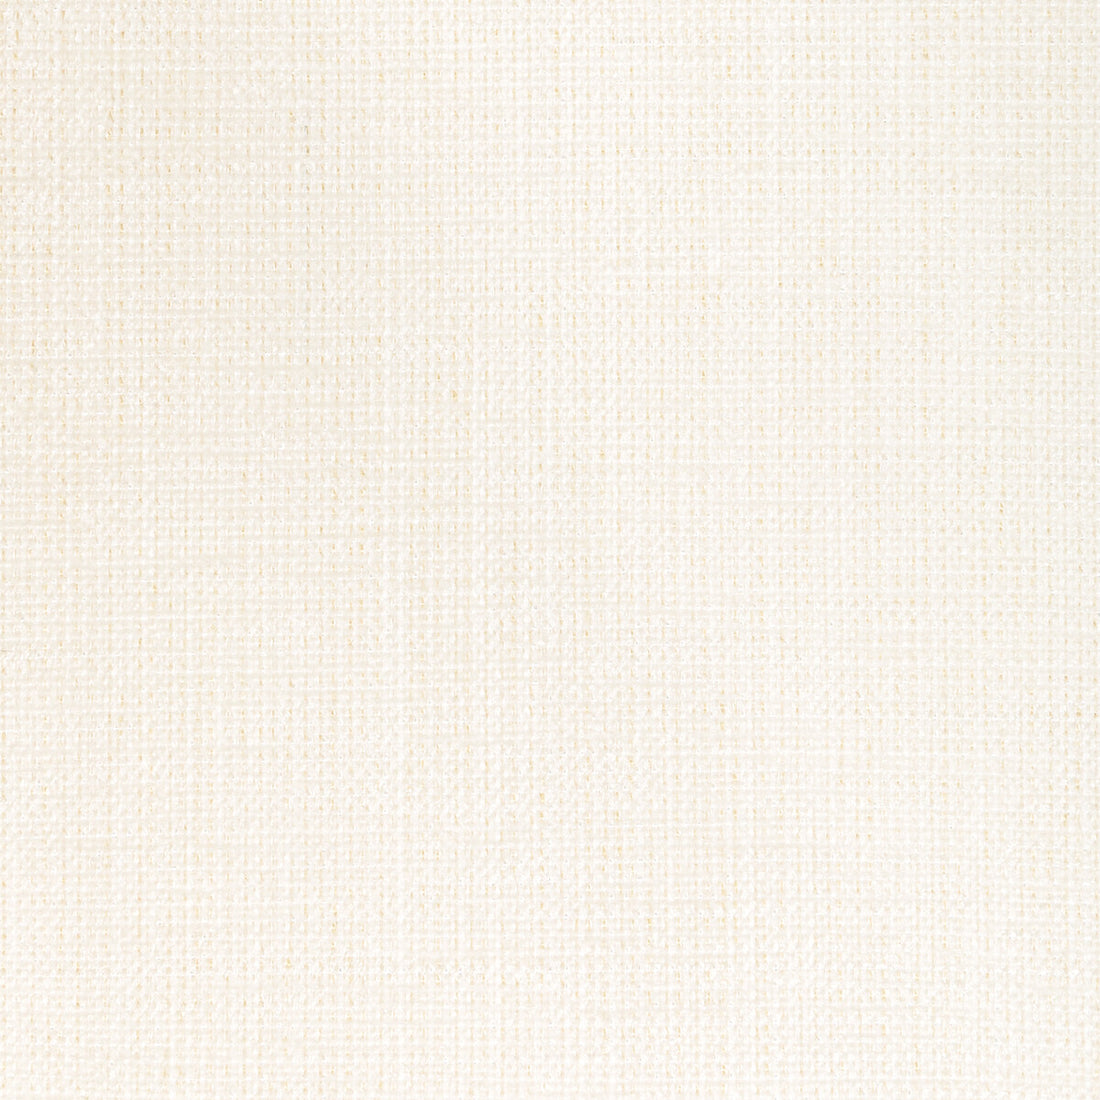 Poet Plain fabric in ivory color - pattern 36649.1.0 - by Kravet Basics